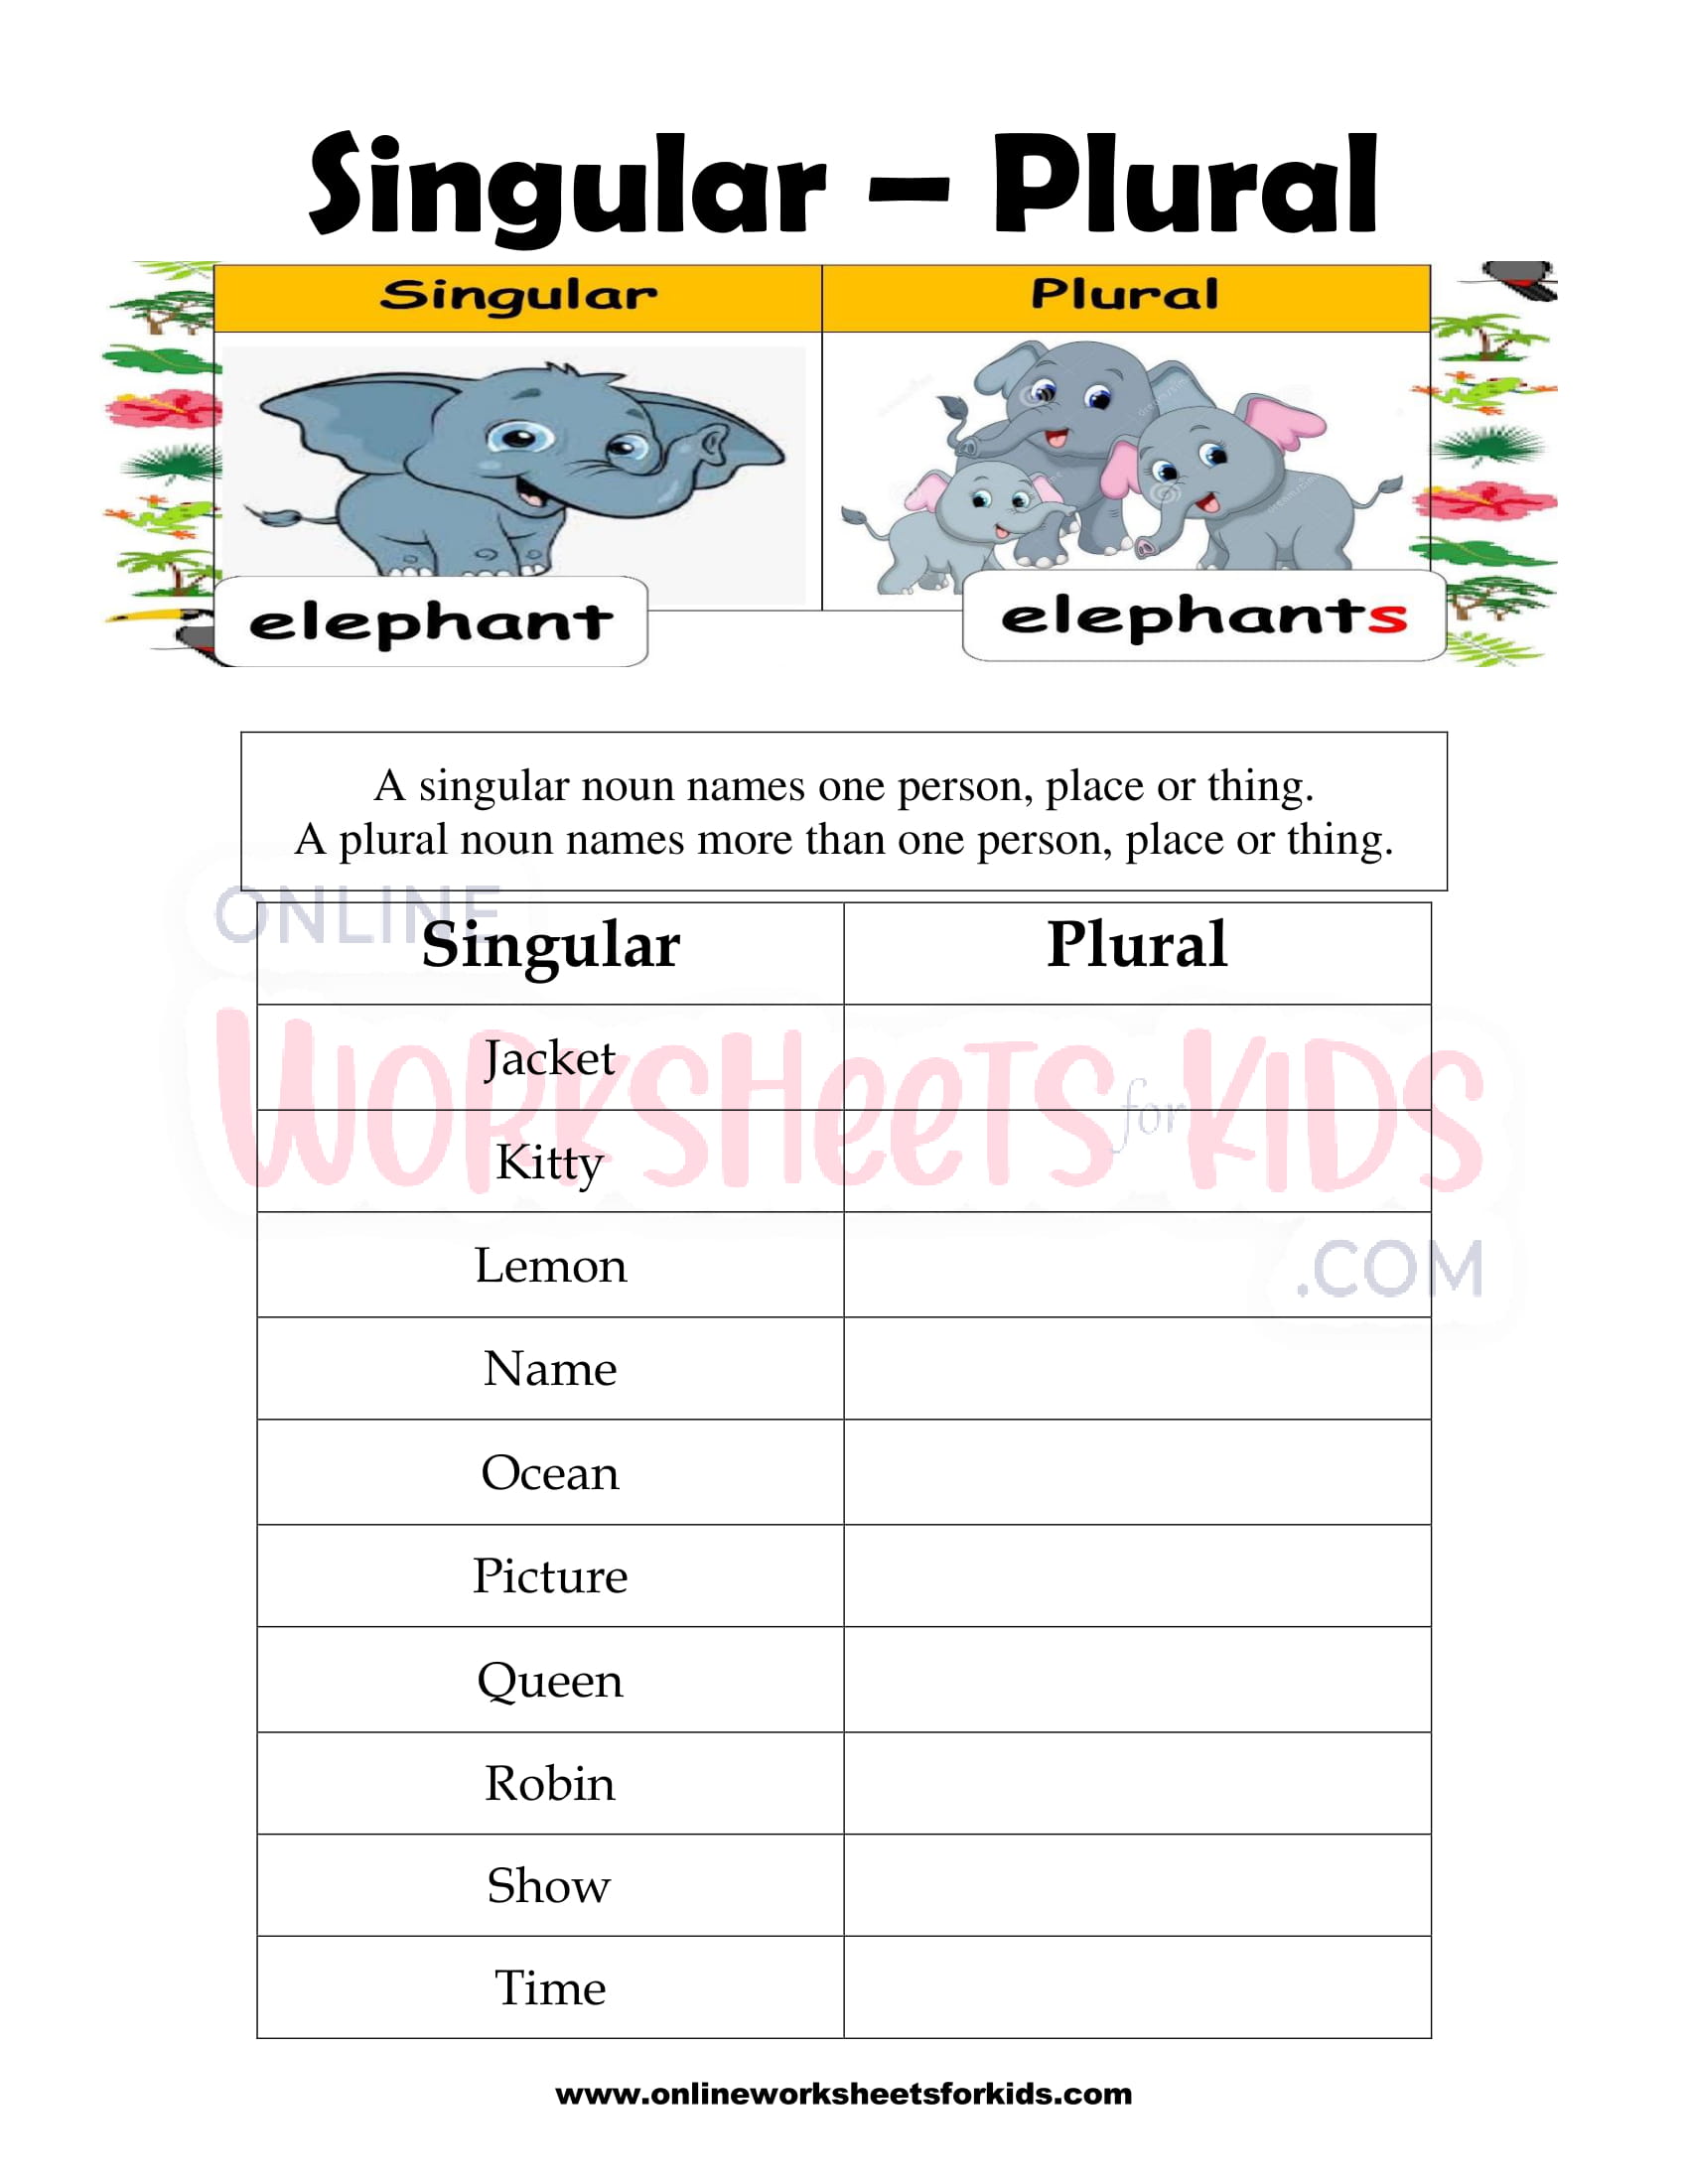 singular-and-plural-nouns-worksheet-4